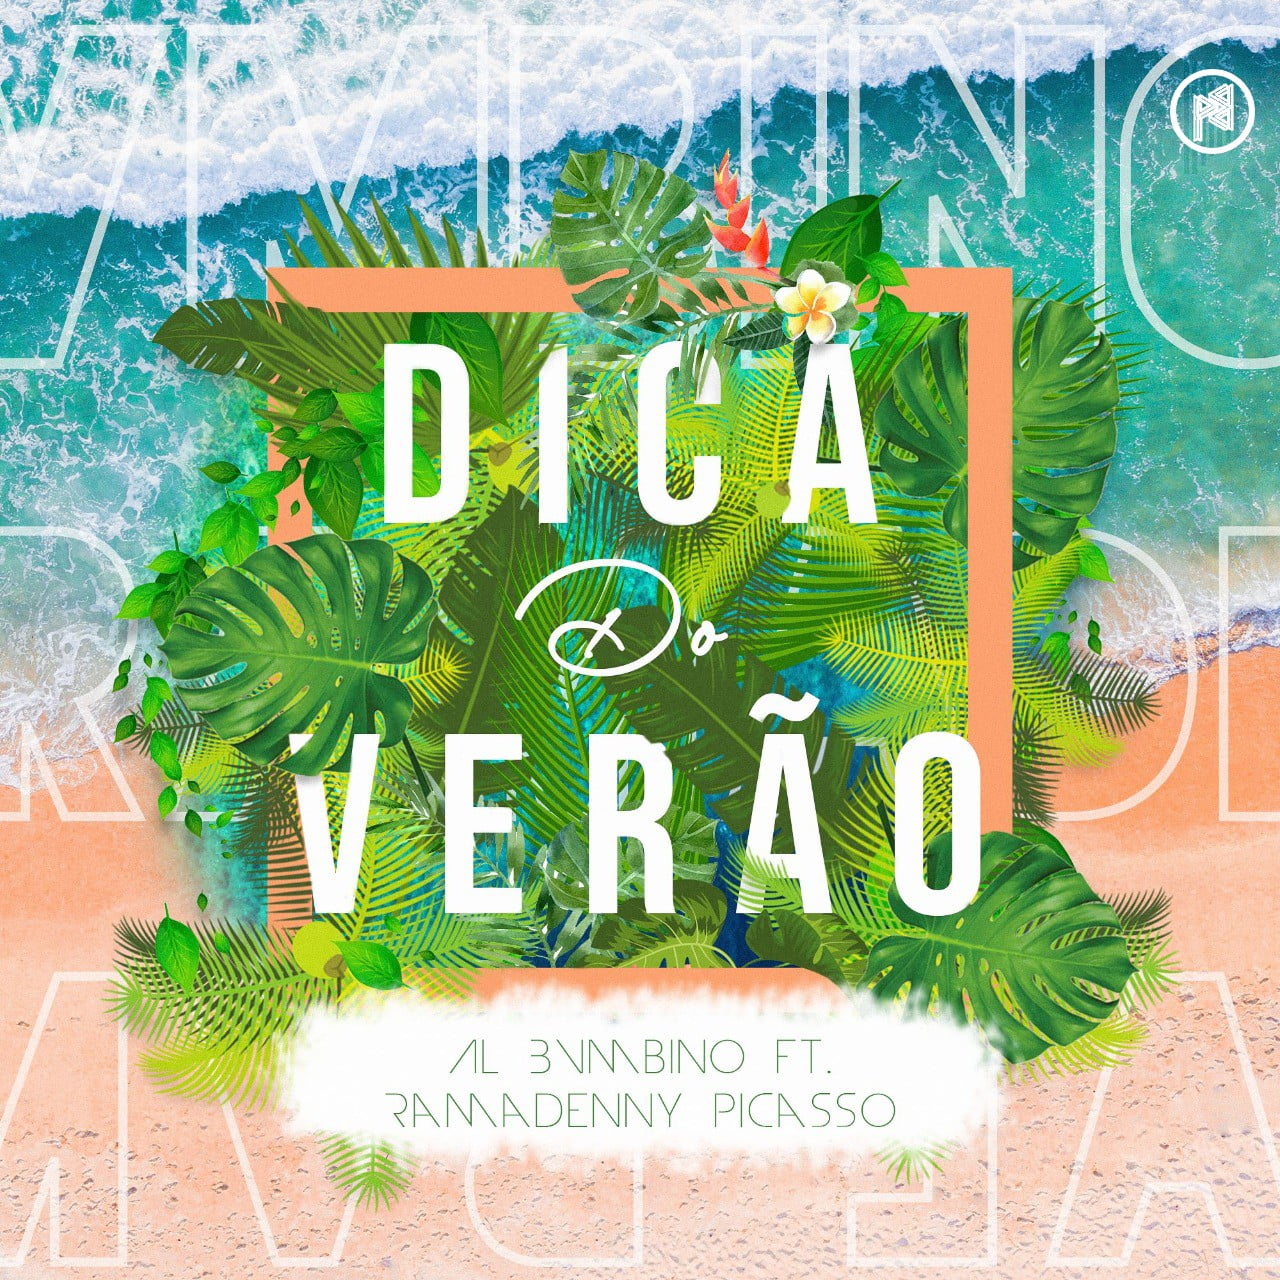 Al Bvmbino - Dica Do Verão (feat. Ramadenny Picasso)